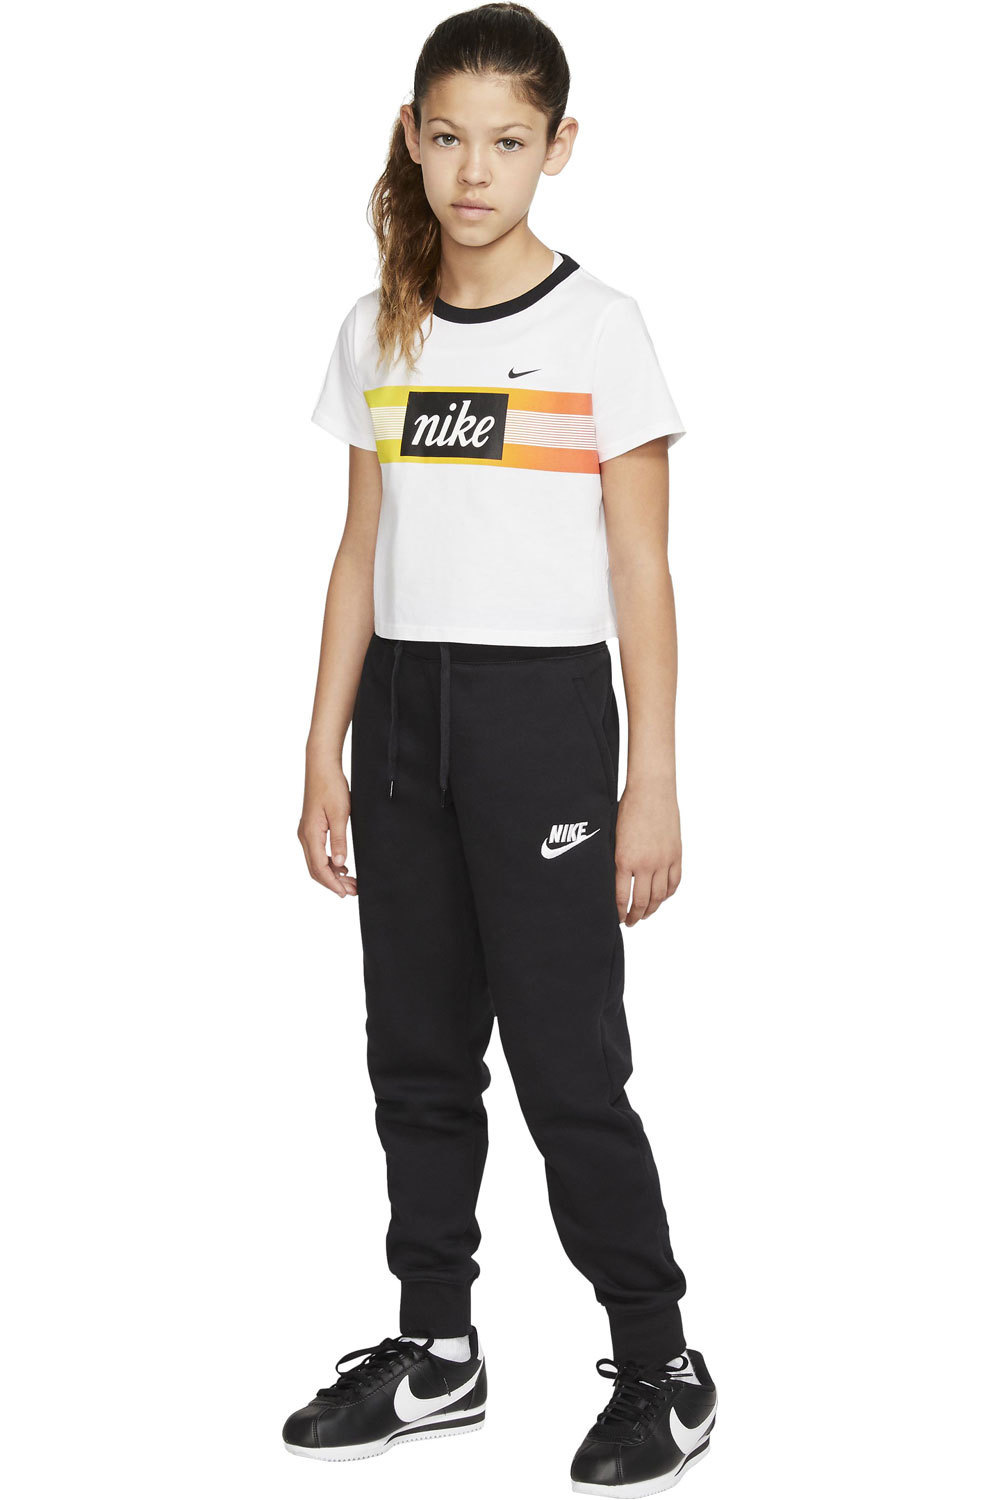 Nike pantalón niña (senior) G NSW PE PANT 05